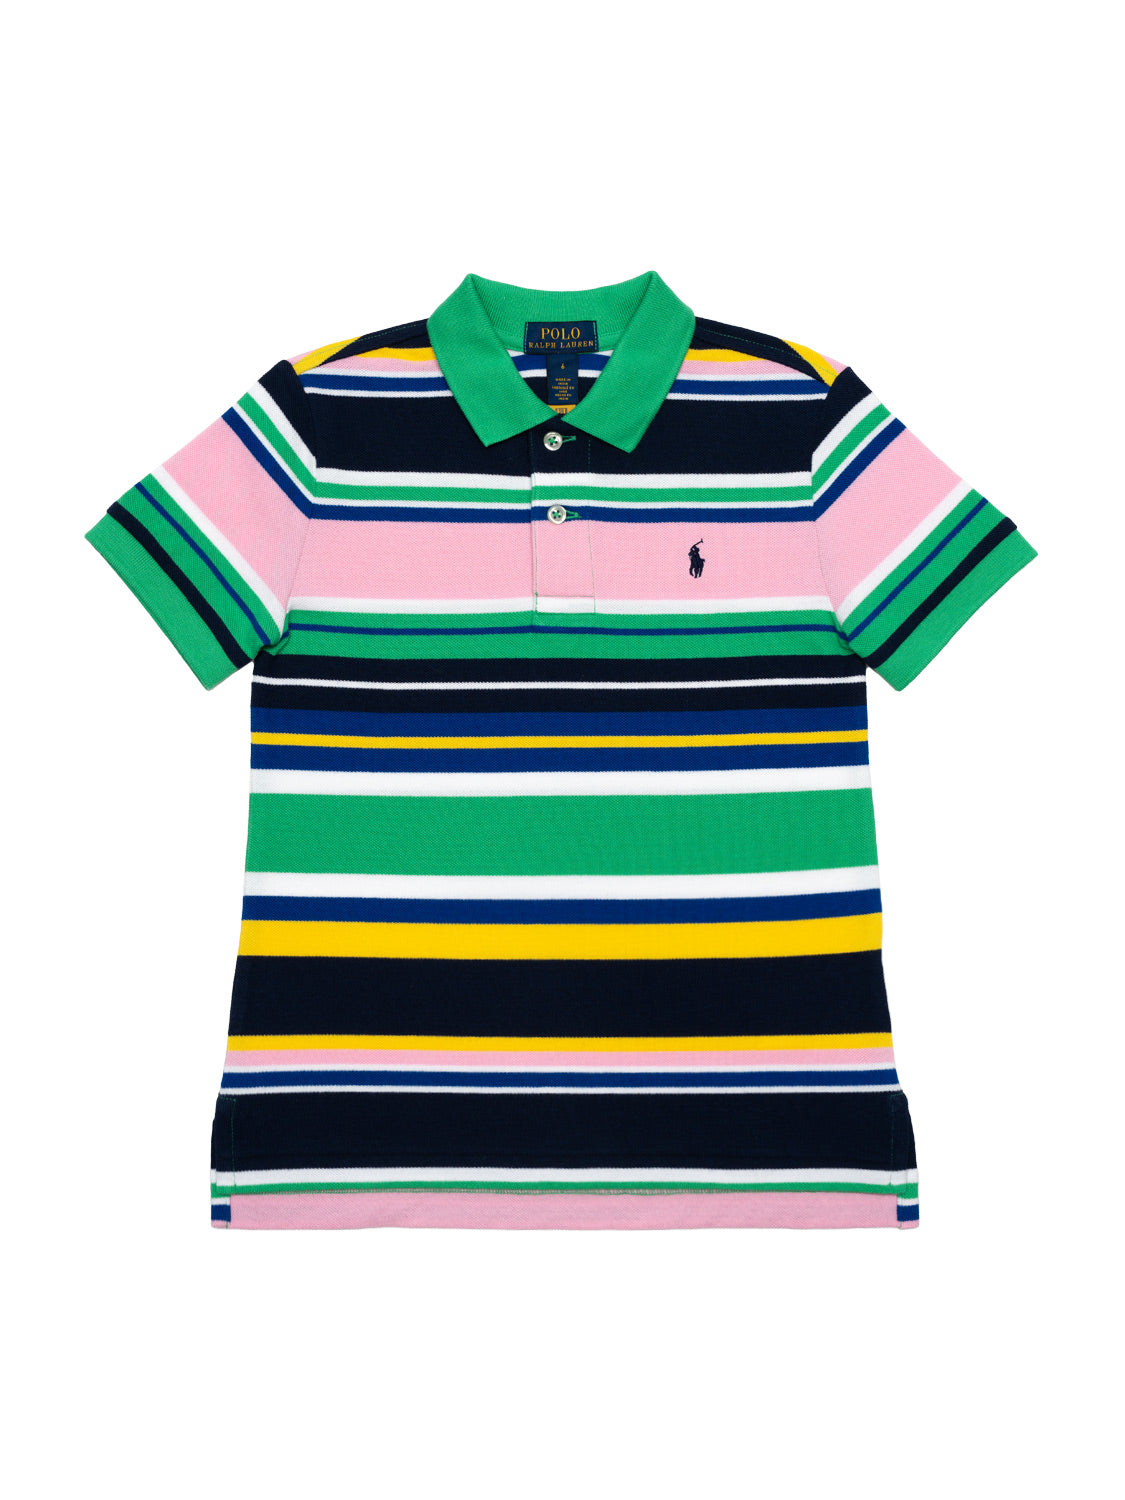 Poloshirt mit mehrfarbigen Streifen - Multicolor